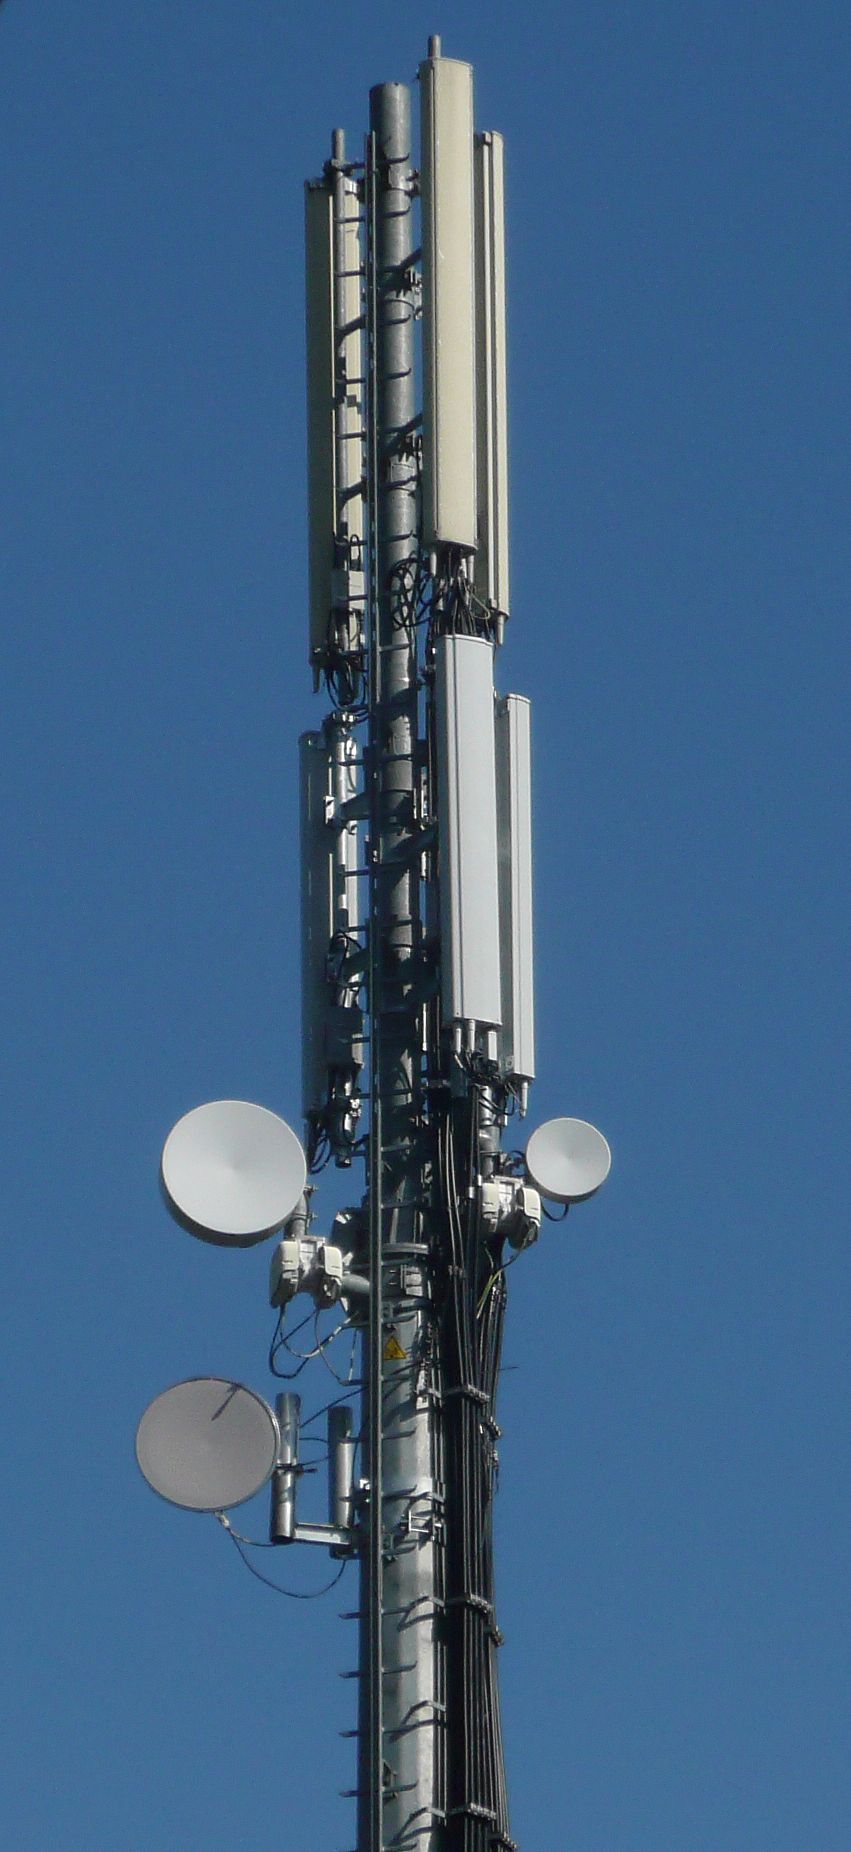 Die Anlage jetzt auch mit den Antennen von Wind (März 2012)